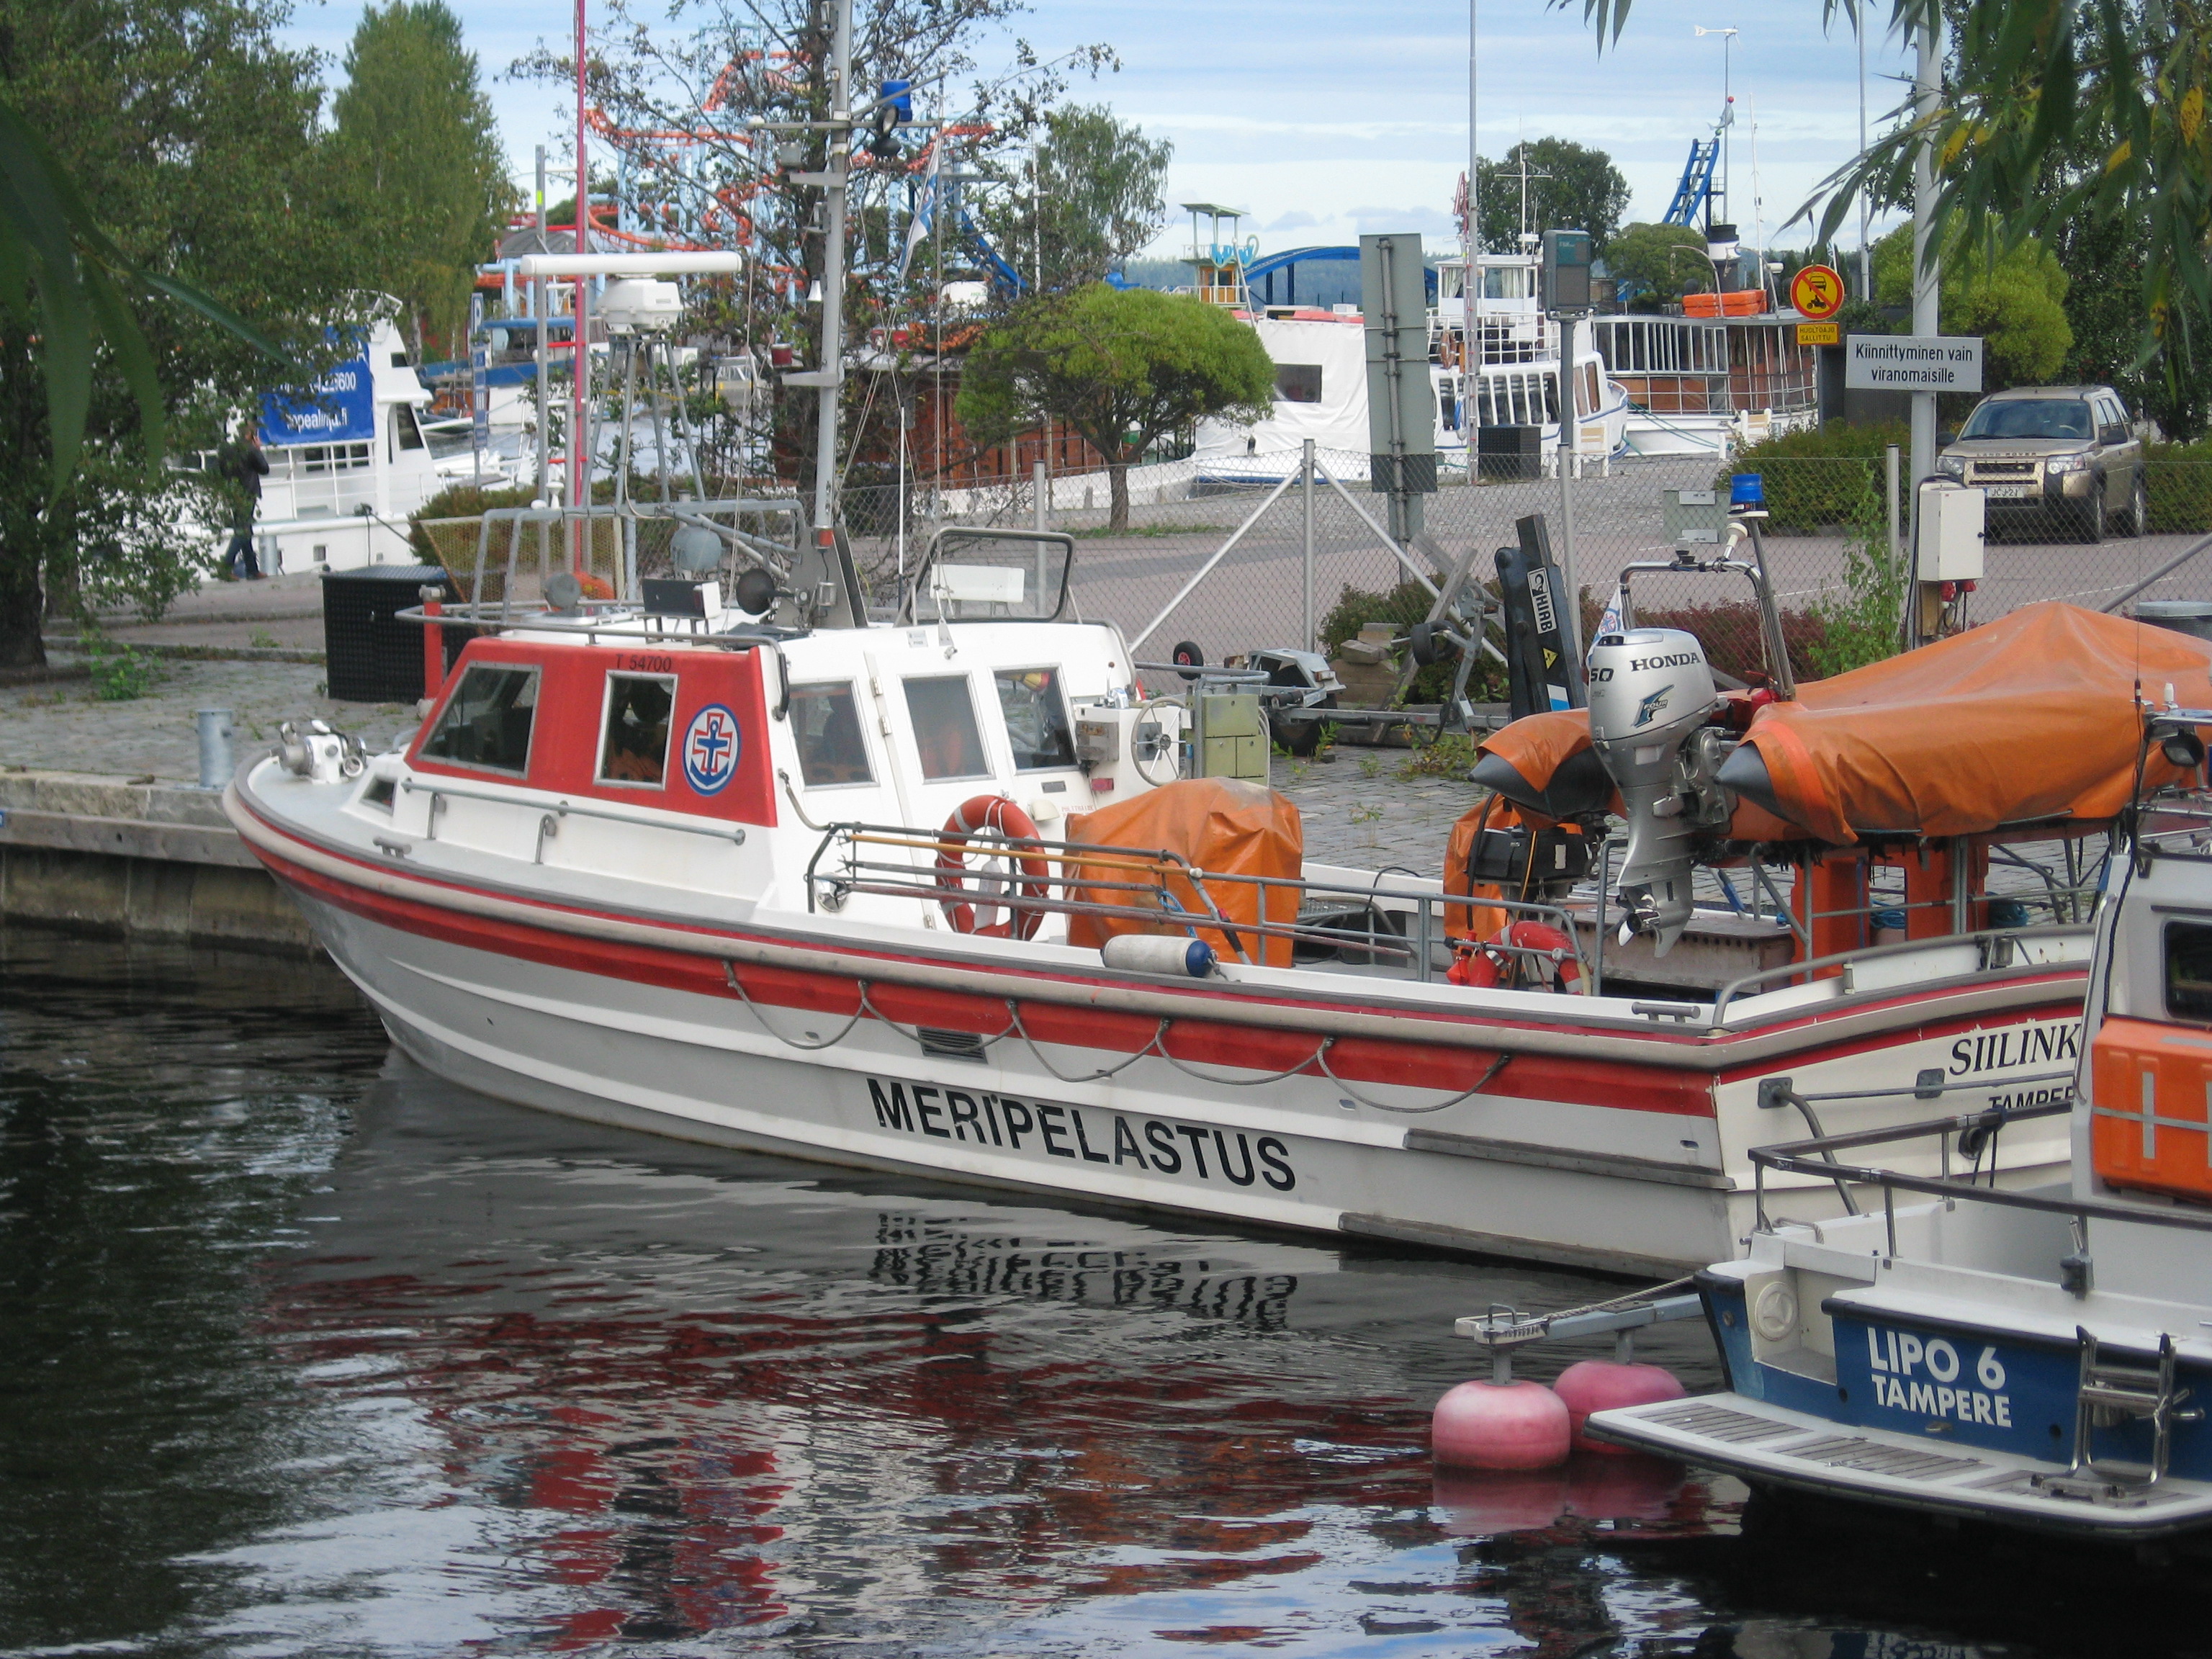 Rescue boat Näsijärvi Tampere